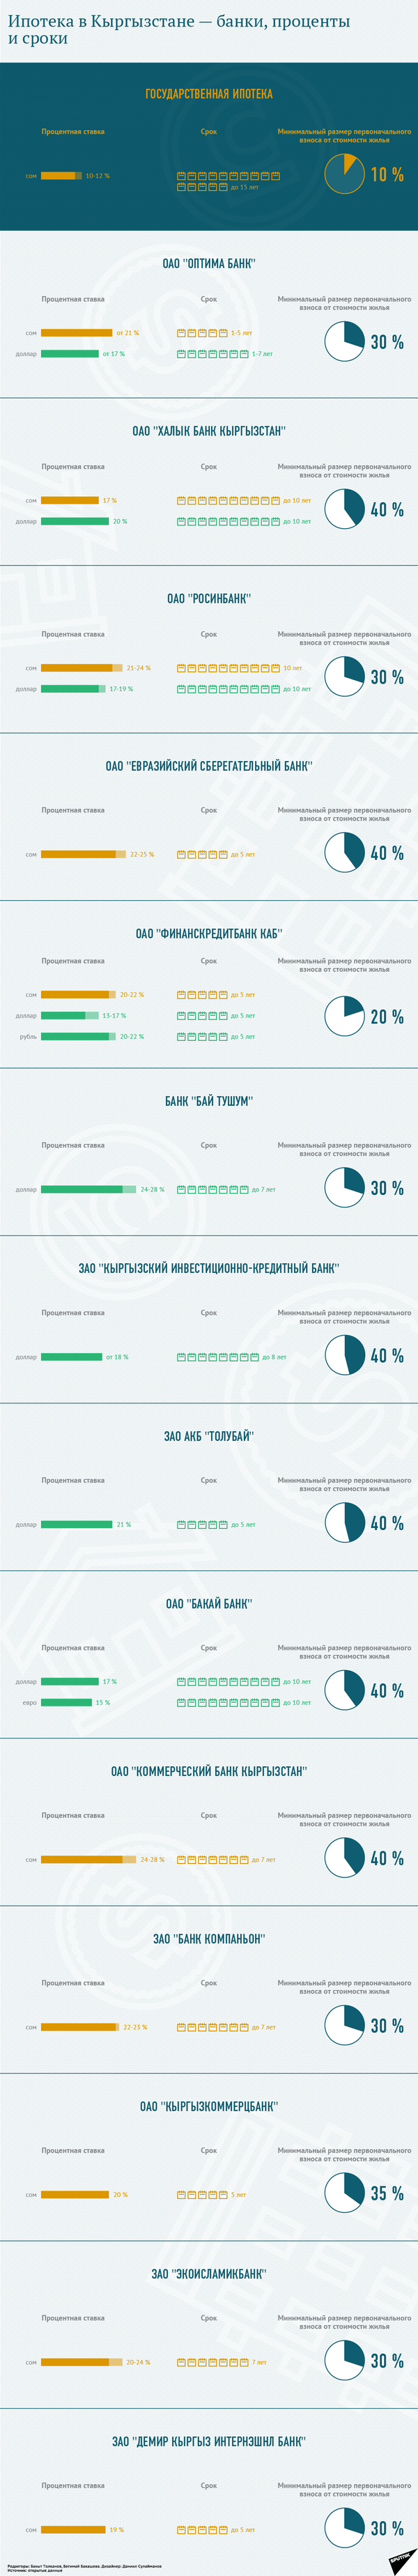 Ипотека в Кыргызстане — банки, проценты и сроки - Sputnik Кыргызстан